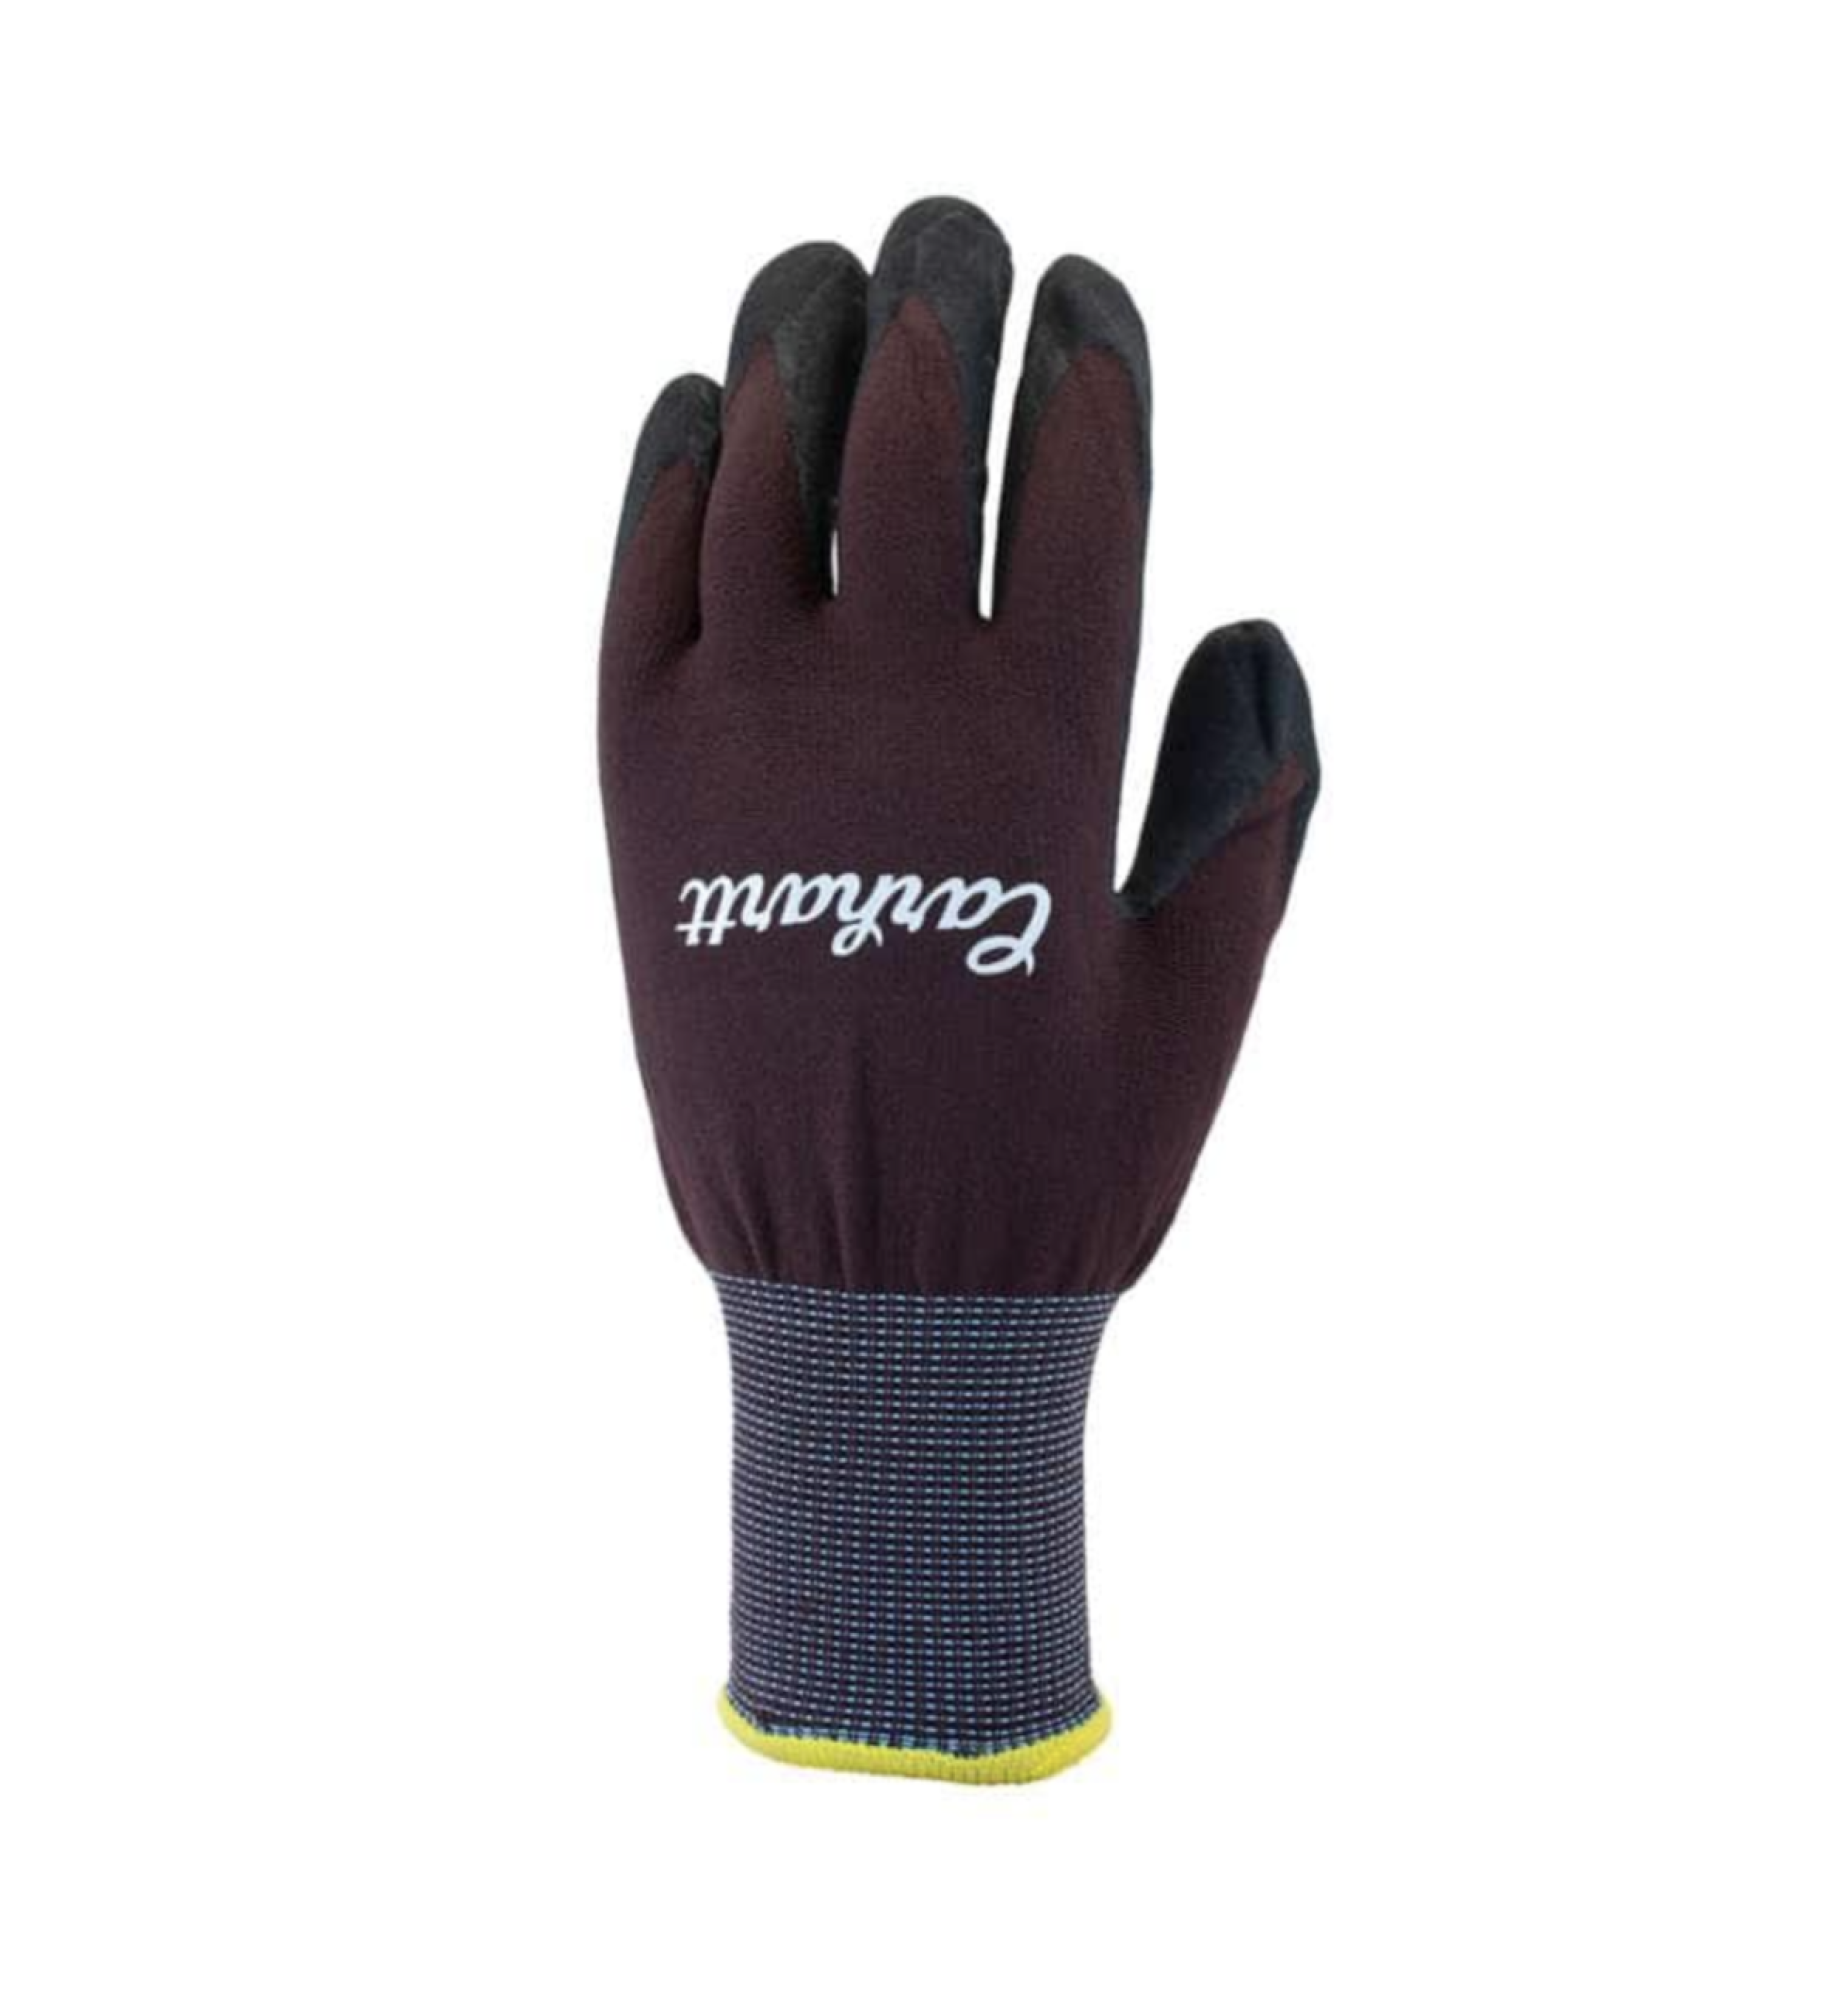 Carhartt Women's All Purpose Grip Glove - Work World - Workwear, Work Boots, Safety Gear